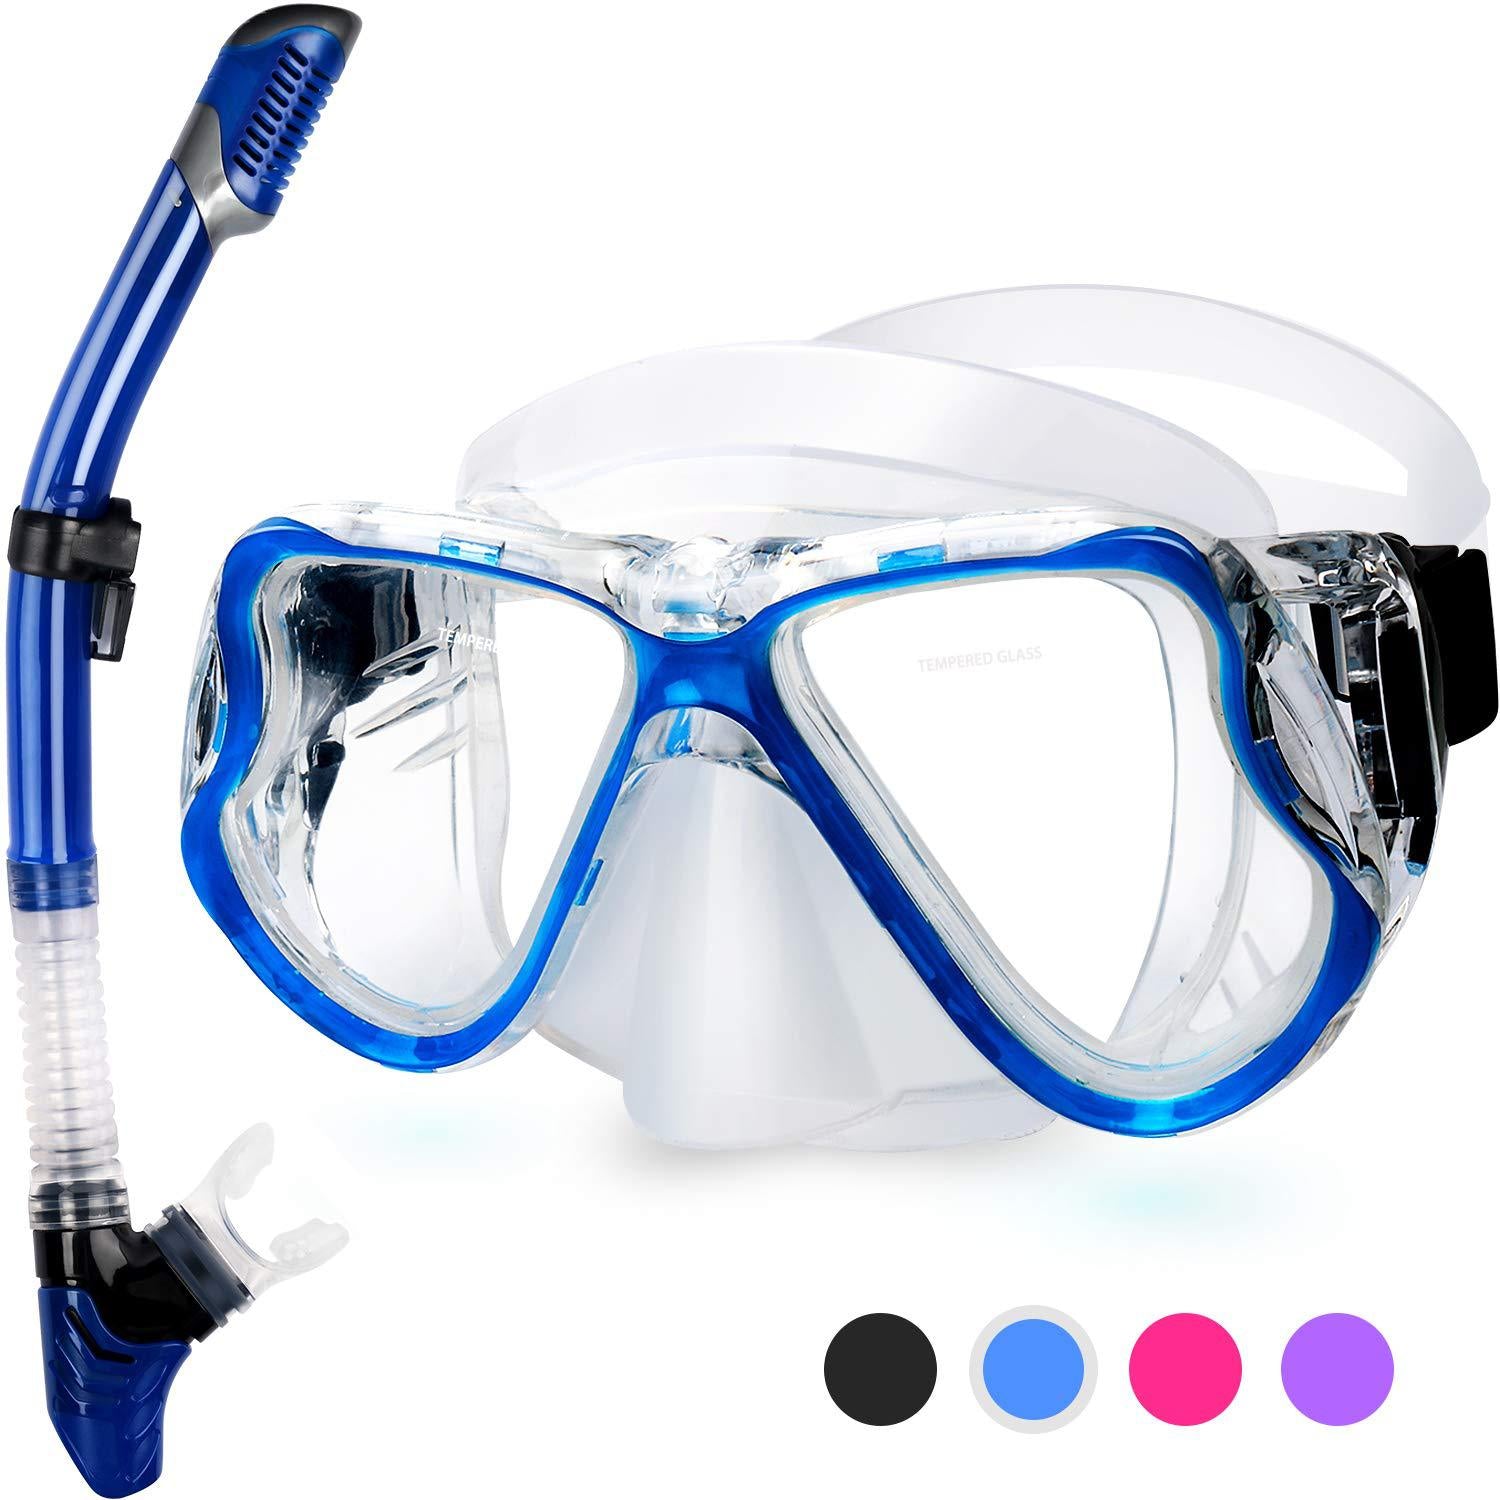 Ochelari anti aburire pentru scufundat sau snorkeling, pentru adulti, cu rama mare